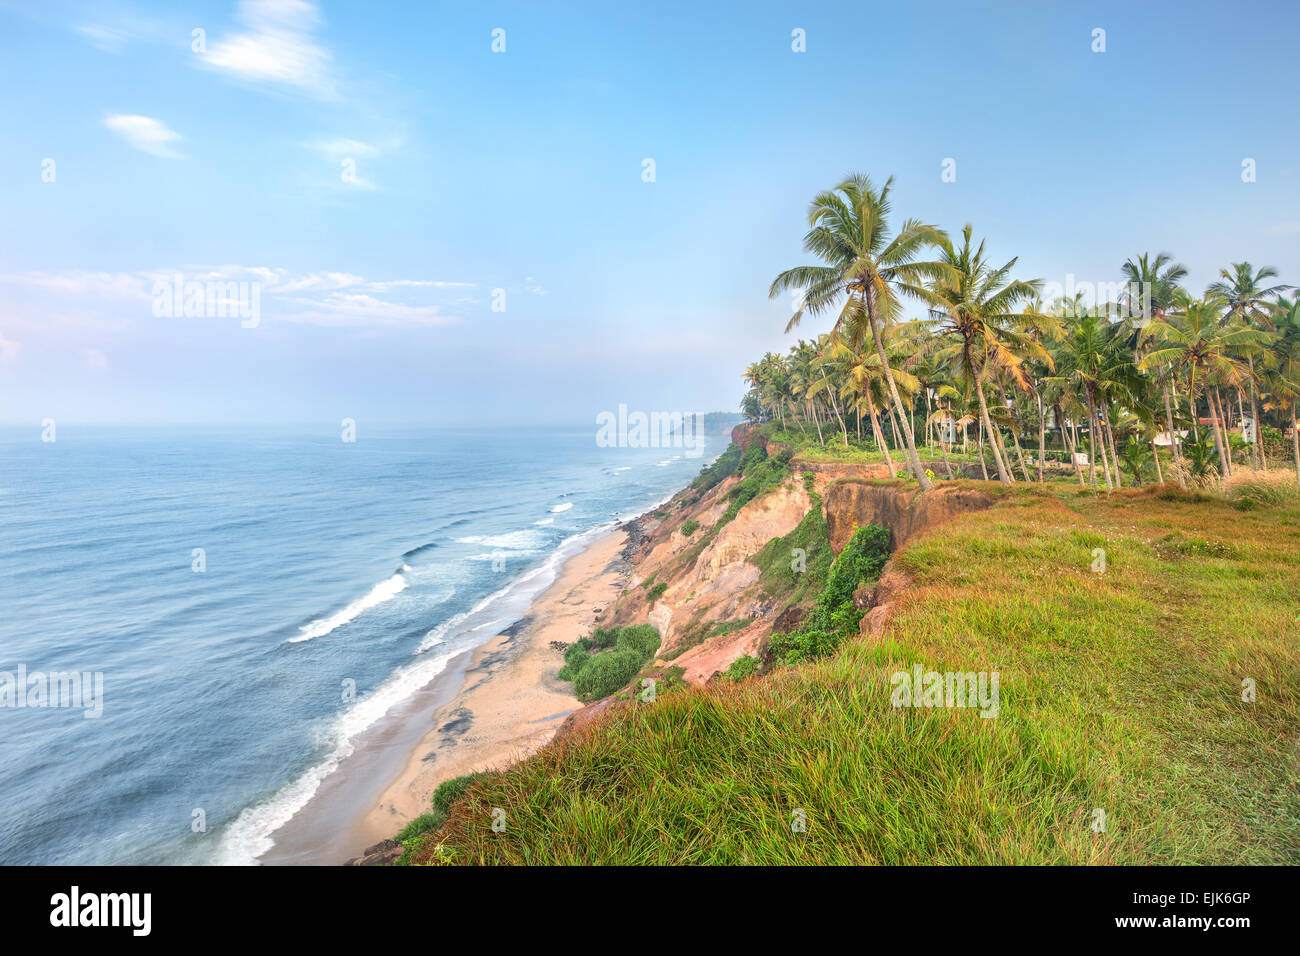 India, Kerala, Varkala beach cliff Stock Photo